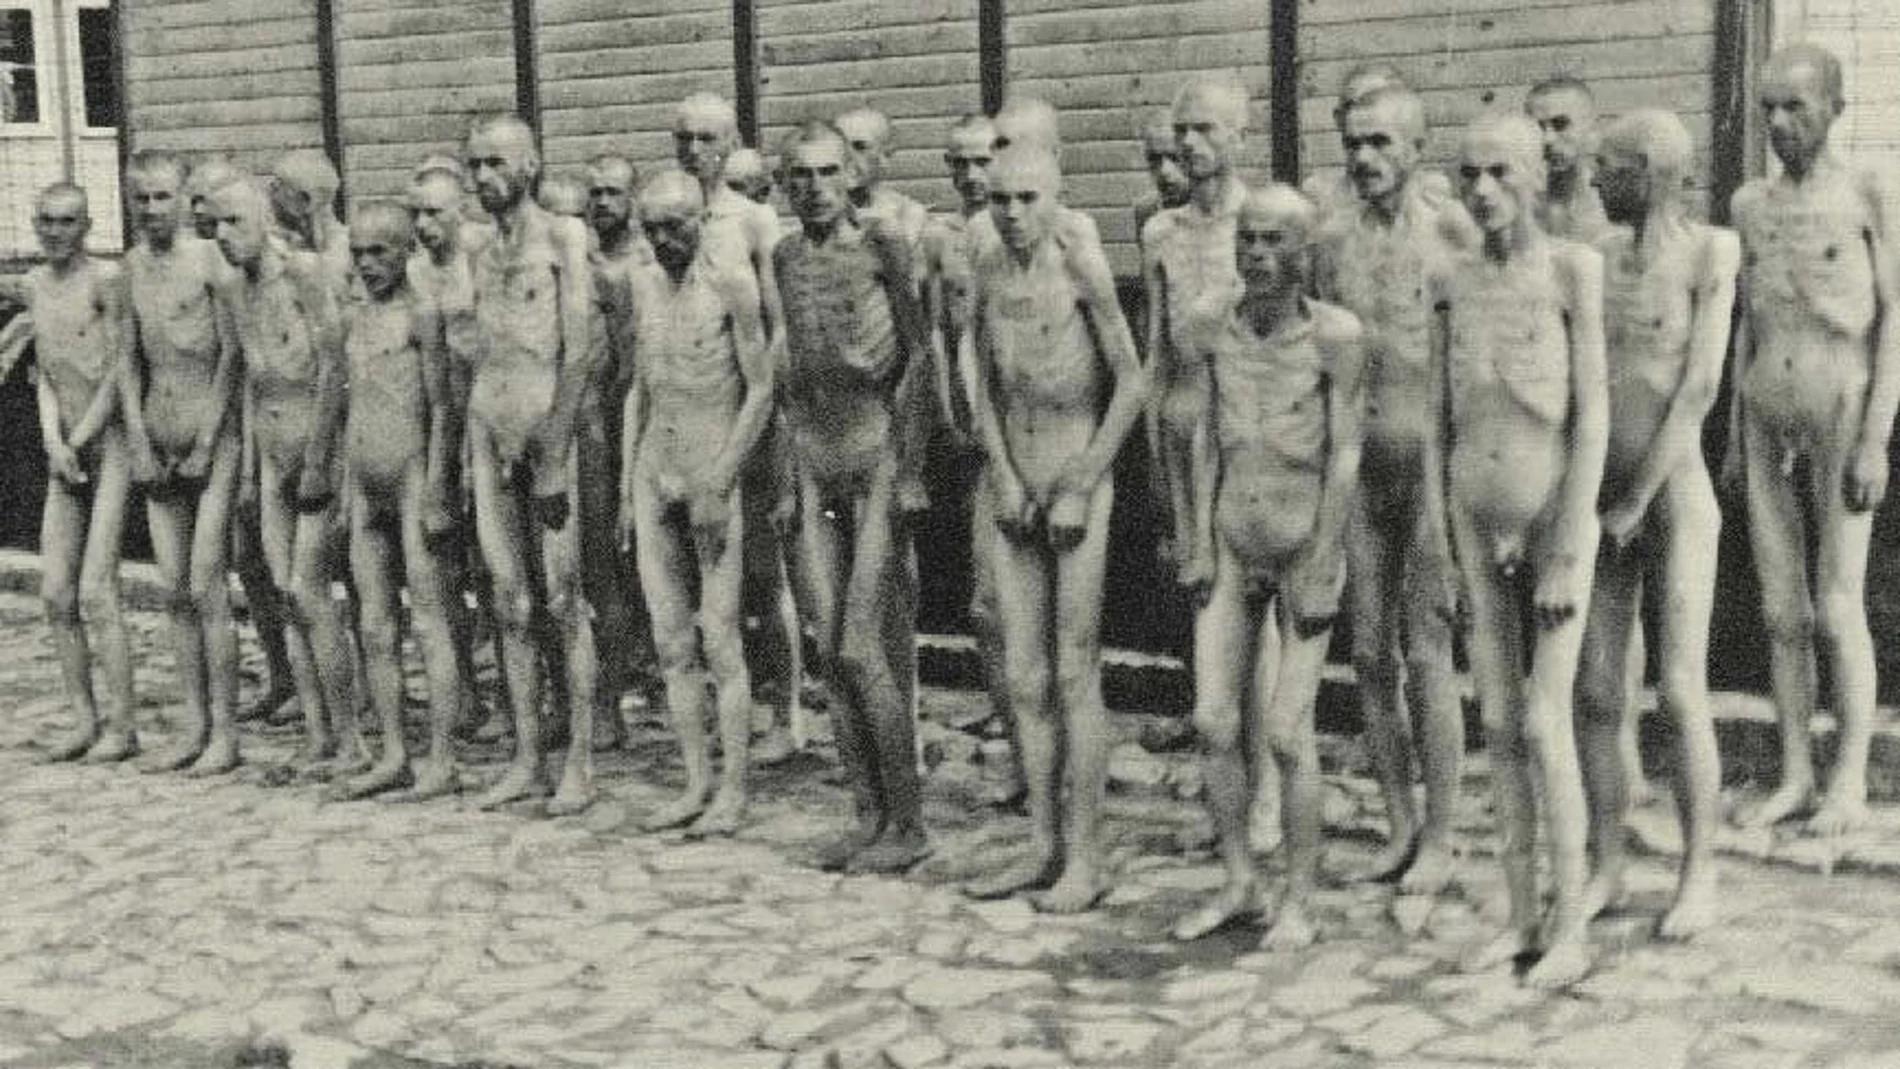 Fotografía facilitada por la editorial RBA, tomada el 21 de junio de 1941, de centenares de prisioneros desnudos a la espera de una desinfección general en el campo nazi de Mauthausen